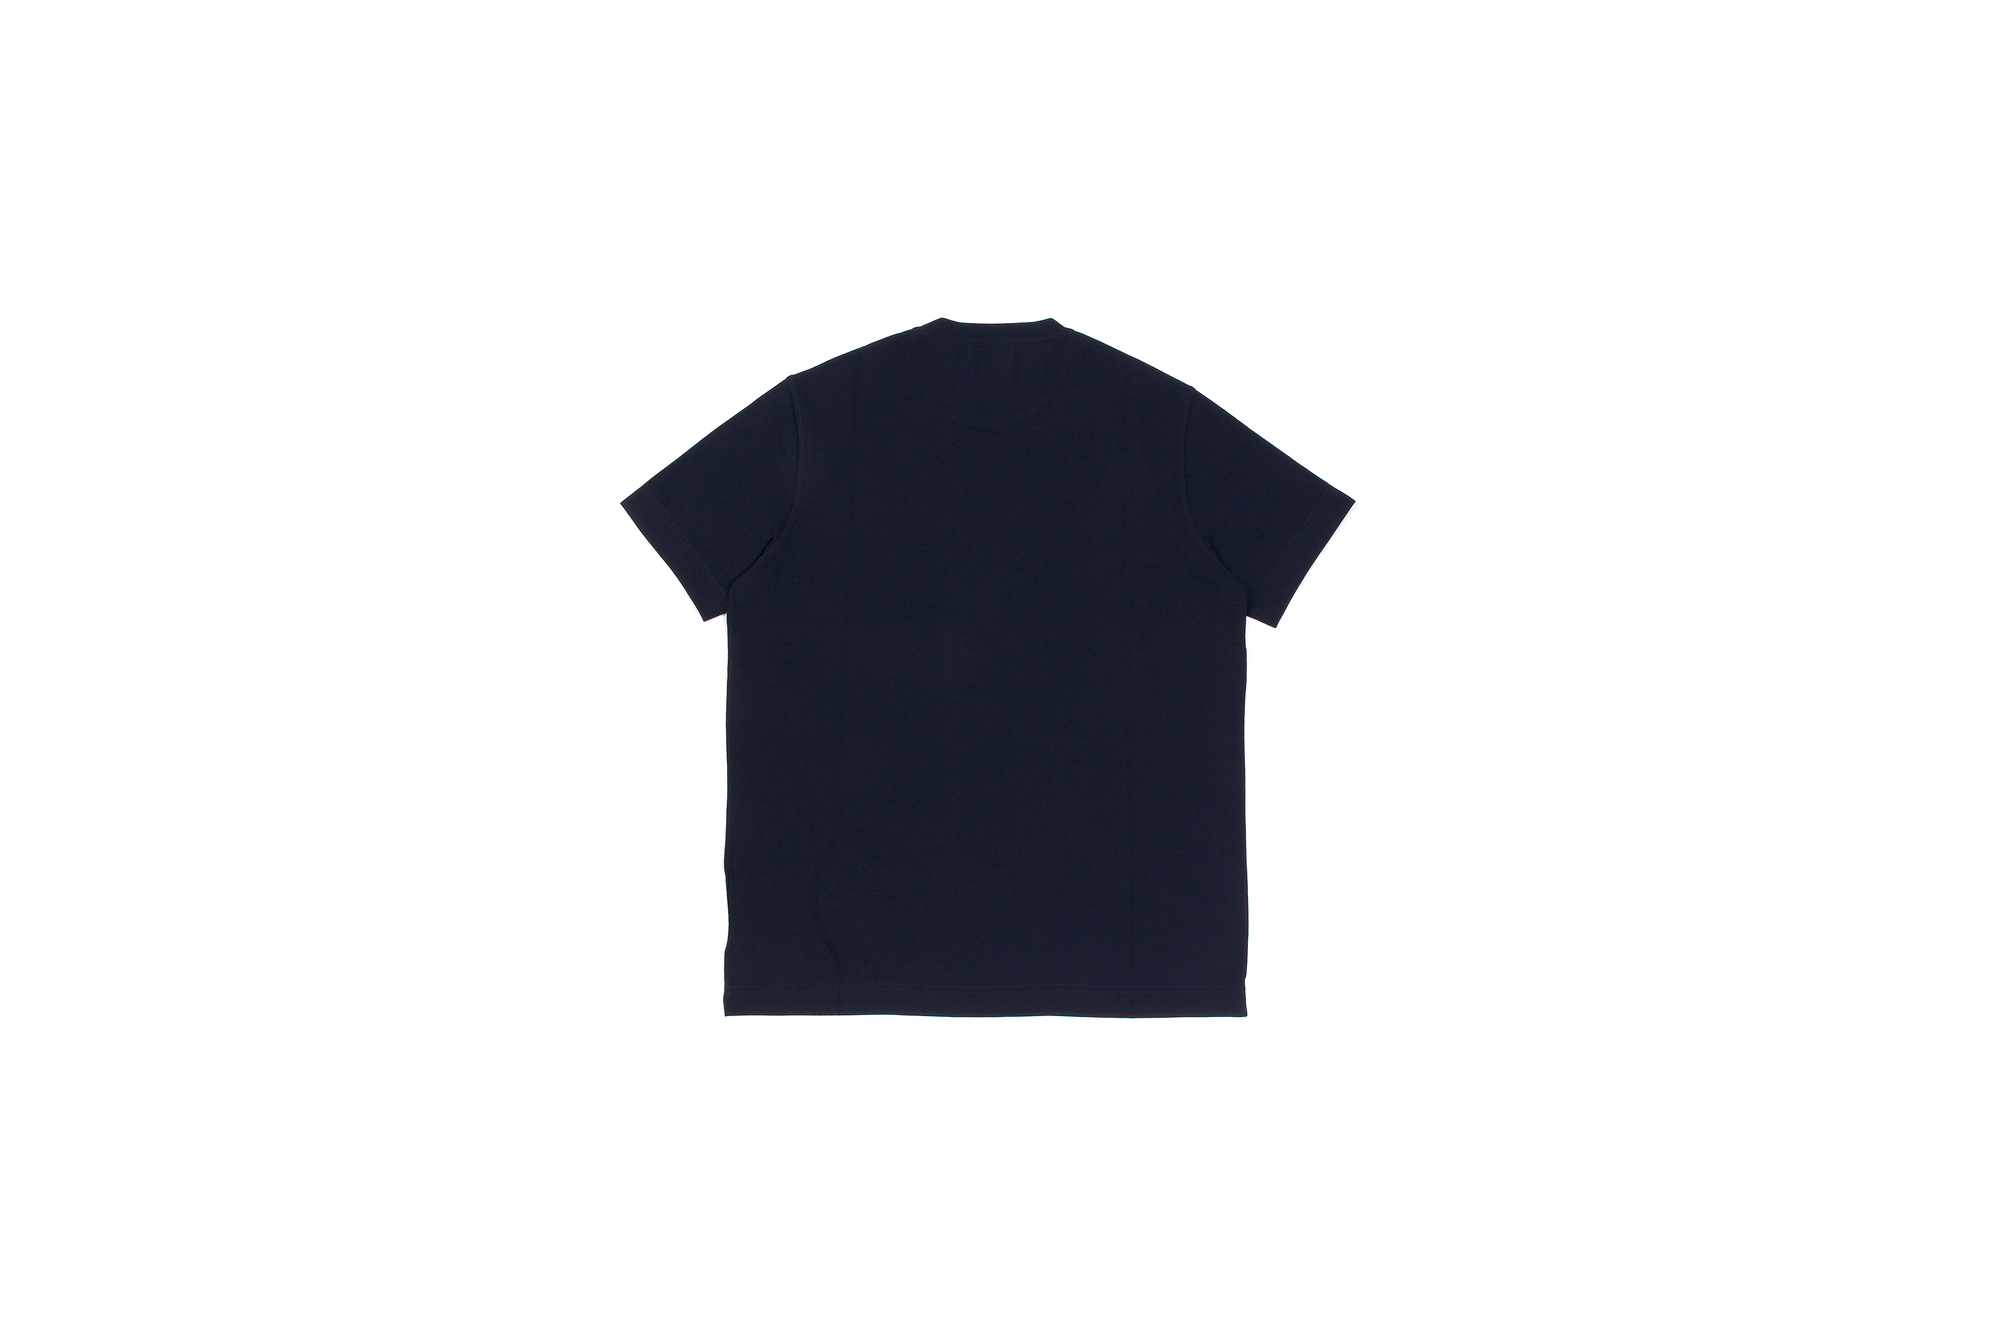 ZANONE(ザノーネ) Crew Neck T-shirt (クルーネックTシャツ) ice cotton アイスコットン Tシャツ NAVY (ネイビー・Z0542) MADE IN ITALY(イタリア製) 2020 春夏 【ご予約開始】愛知 名古屋 altoediritto アルトエデリット tee 夏Tシャツ